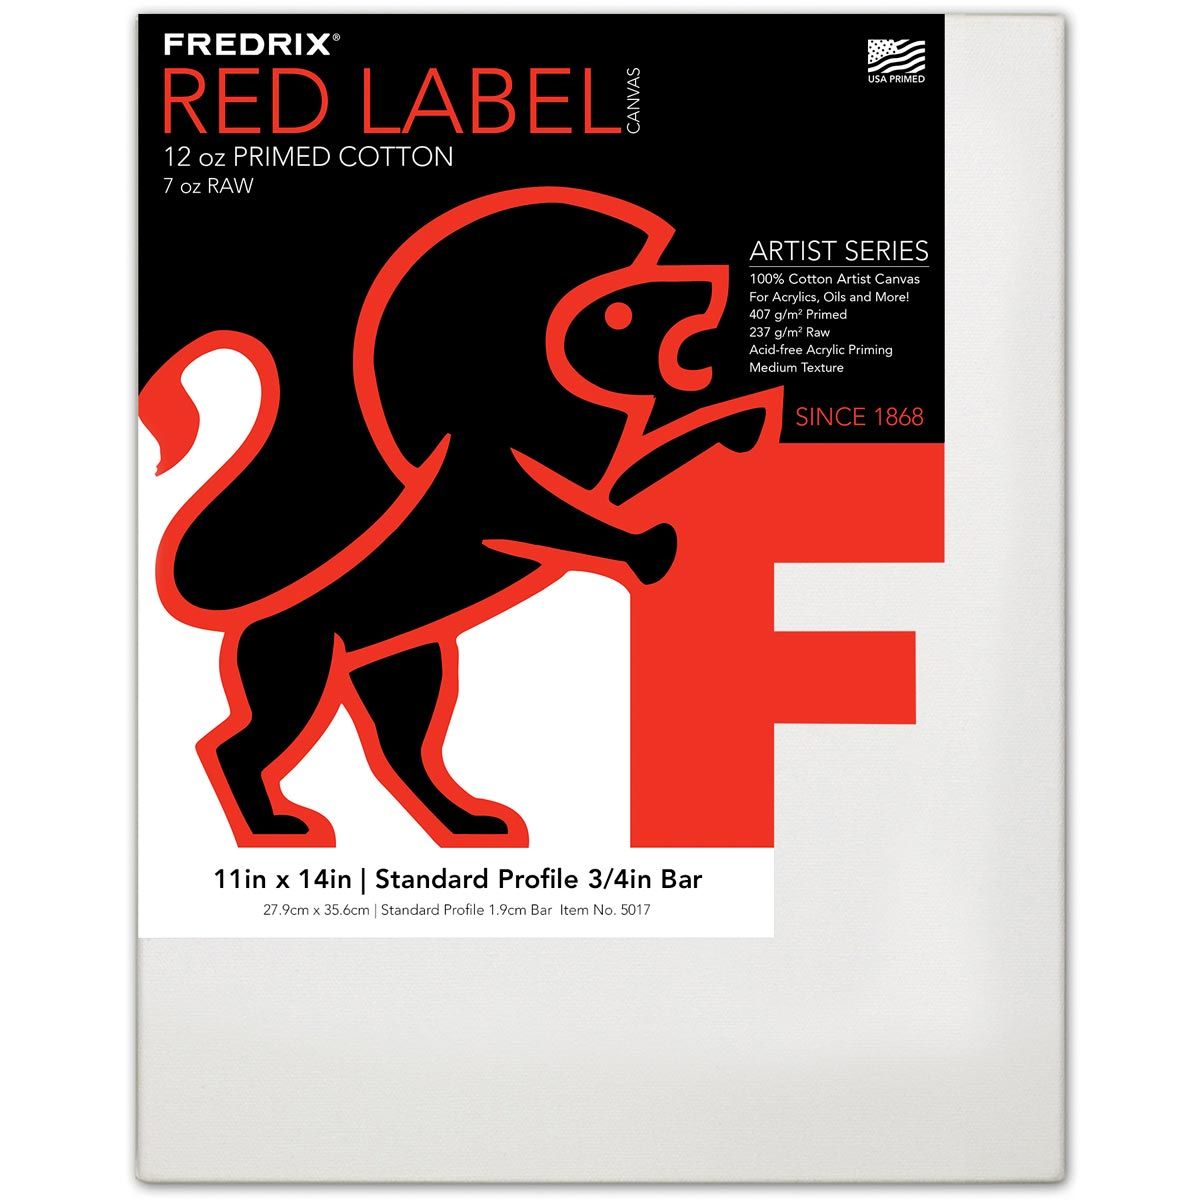 Fredrix Red Label 3/4" Profile Cotton Canvas 11" x 14"